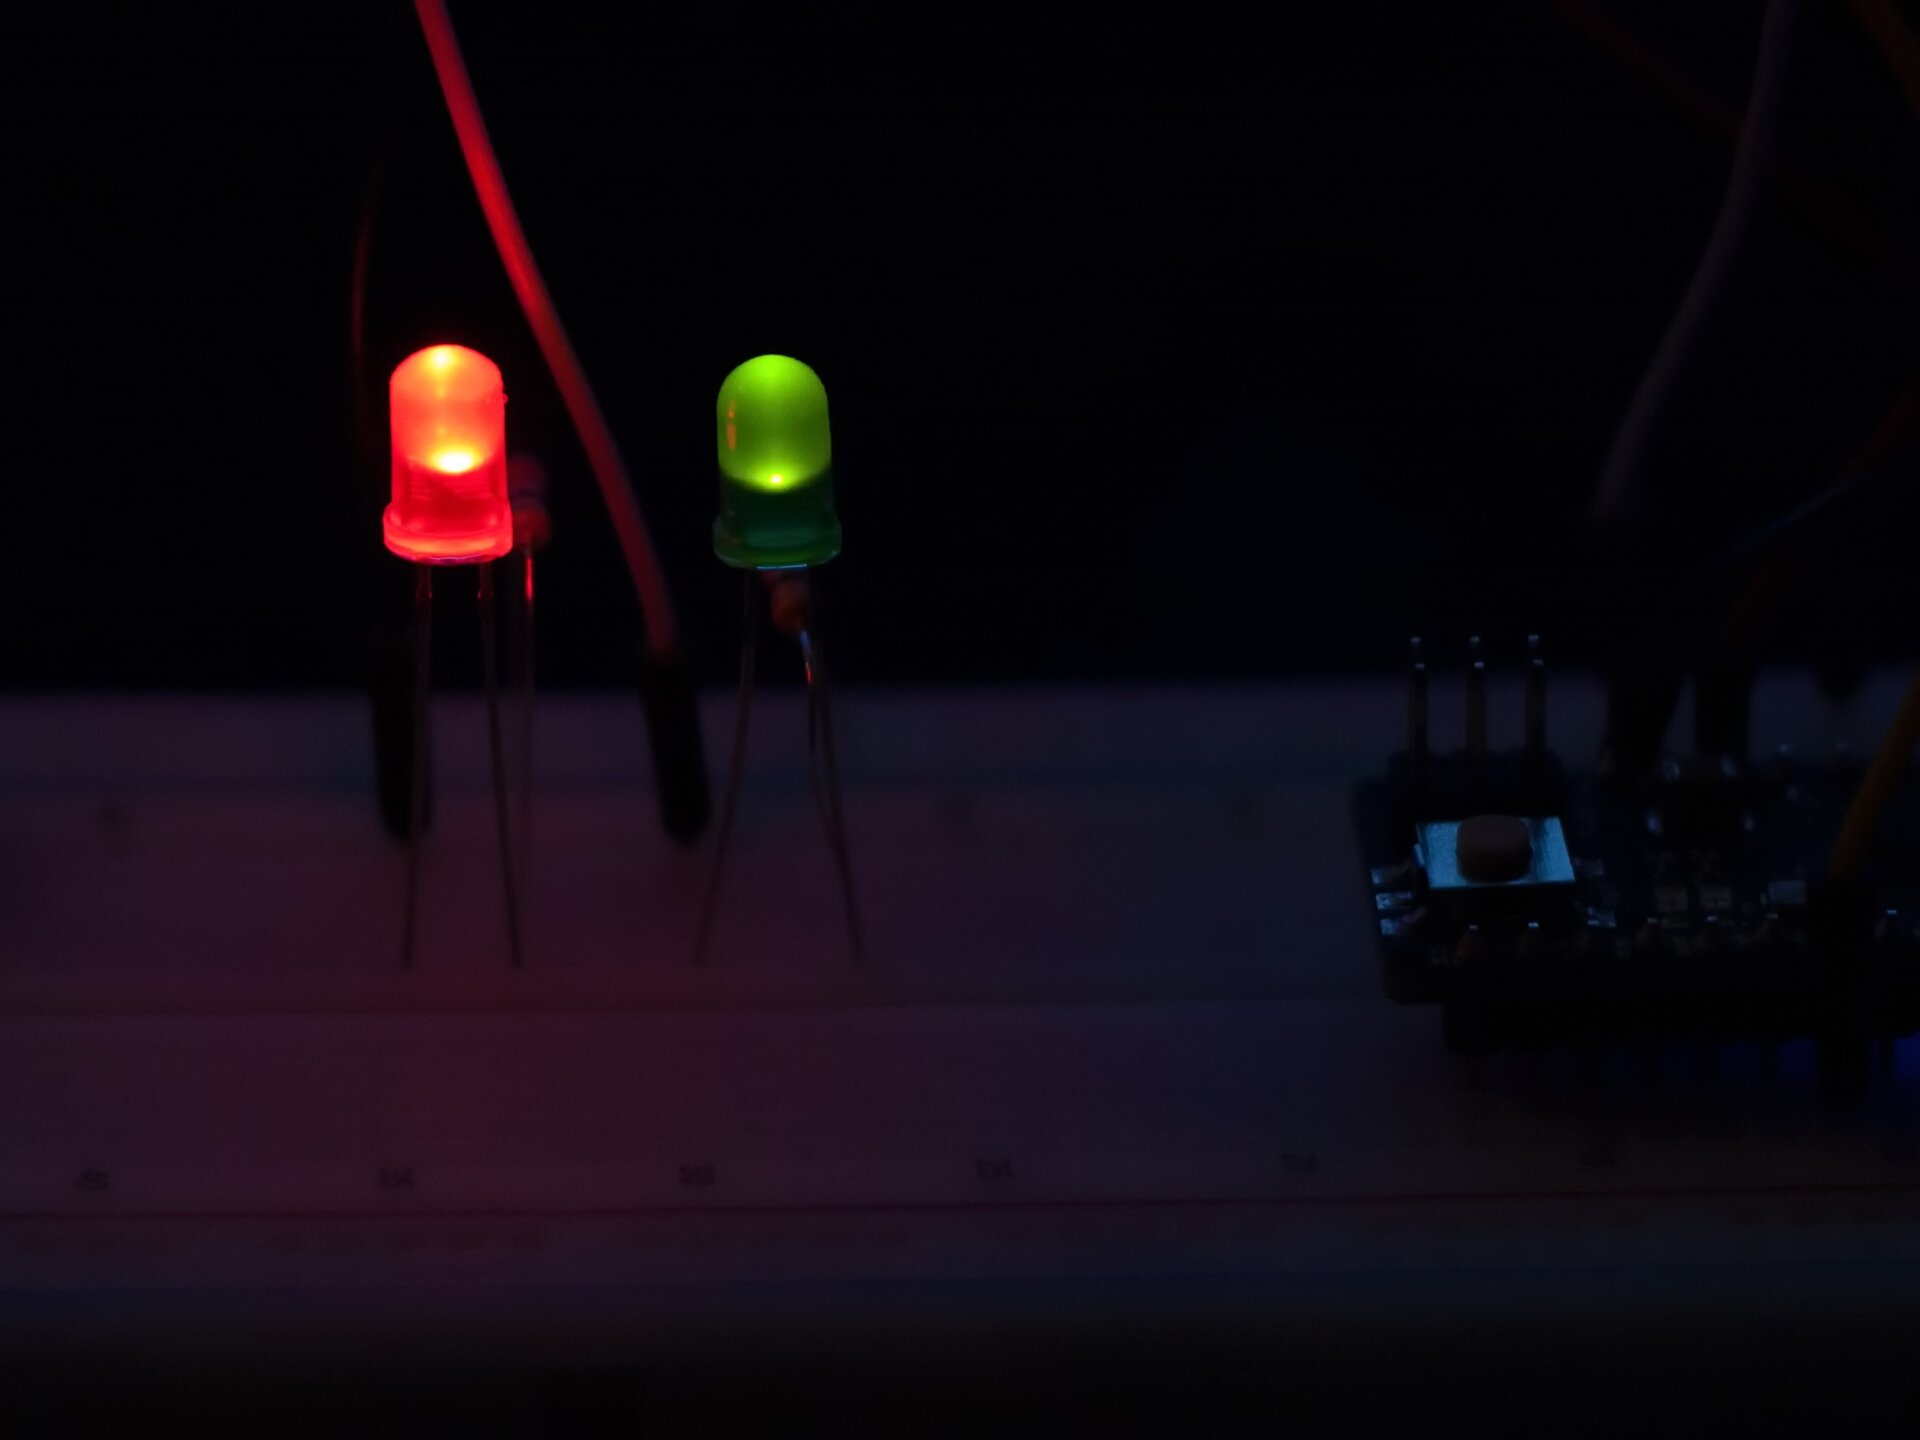 Rys. a. Na zdjęciu widoczne są dwie diody elektroluminescencyjne LED podłączone do prądu. Jedna z nich świeci na czerwono a obok niej znajduje się druga świecąca na zielono. Po prawej stronie widać zacieniony sterownik służący do włączania i wyłączania obu elementów.